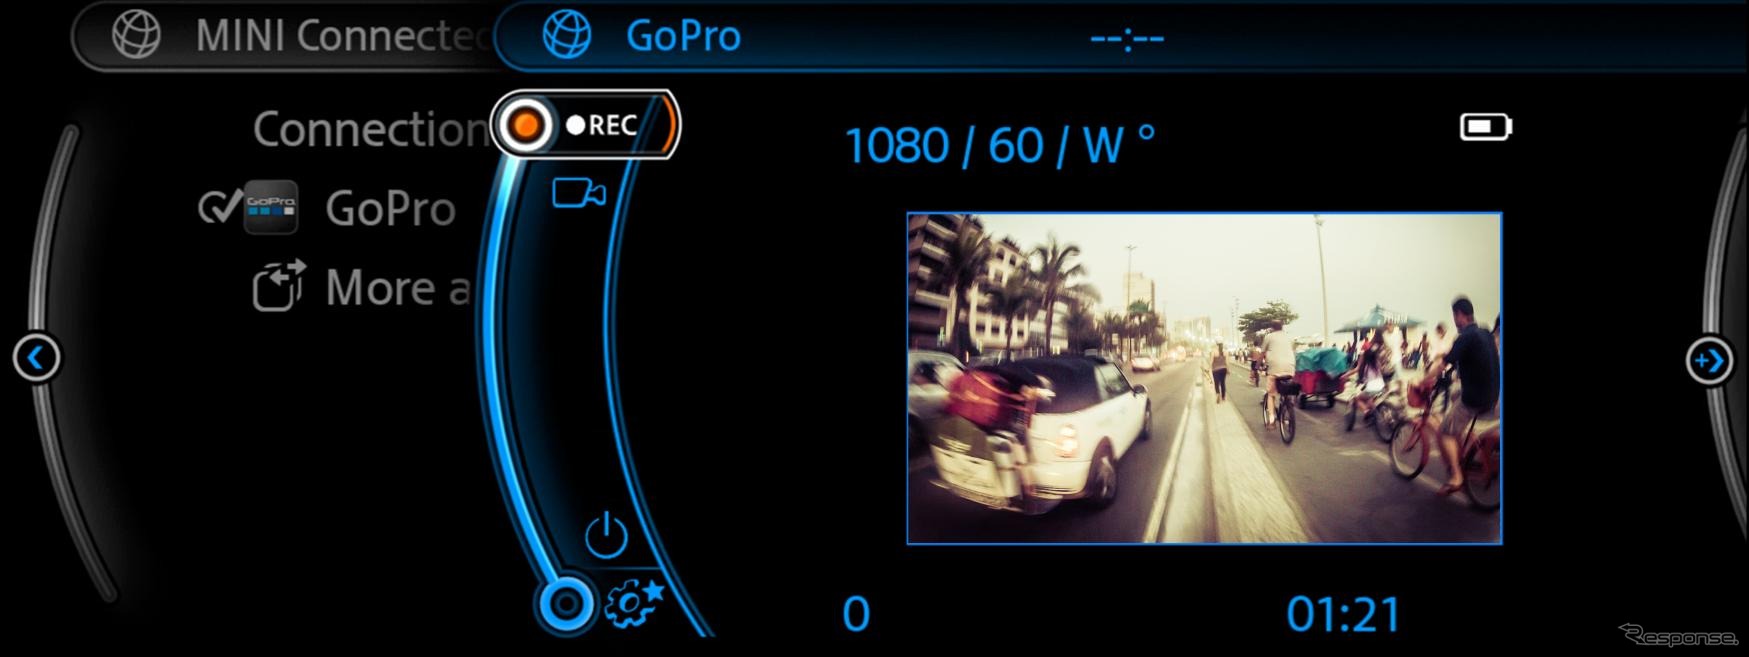 MINIとGoPro カメラの連携イメージ